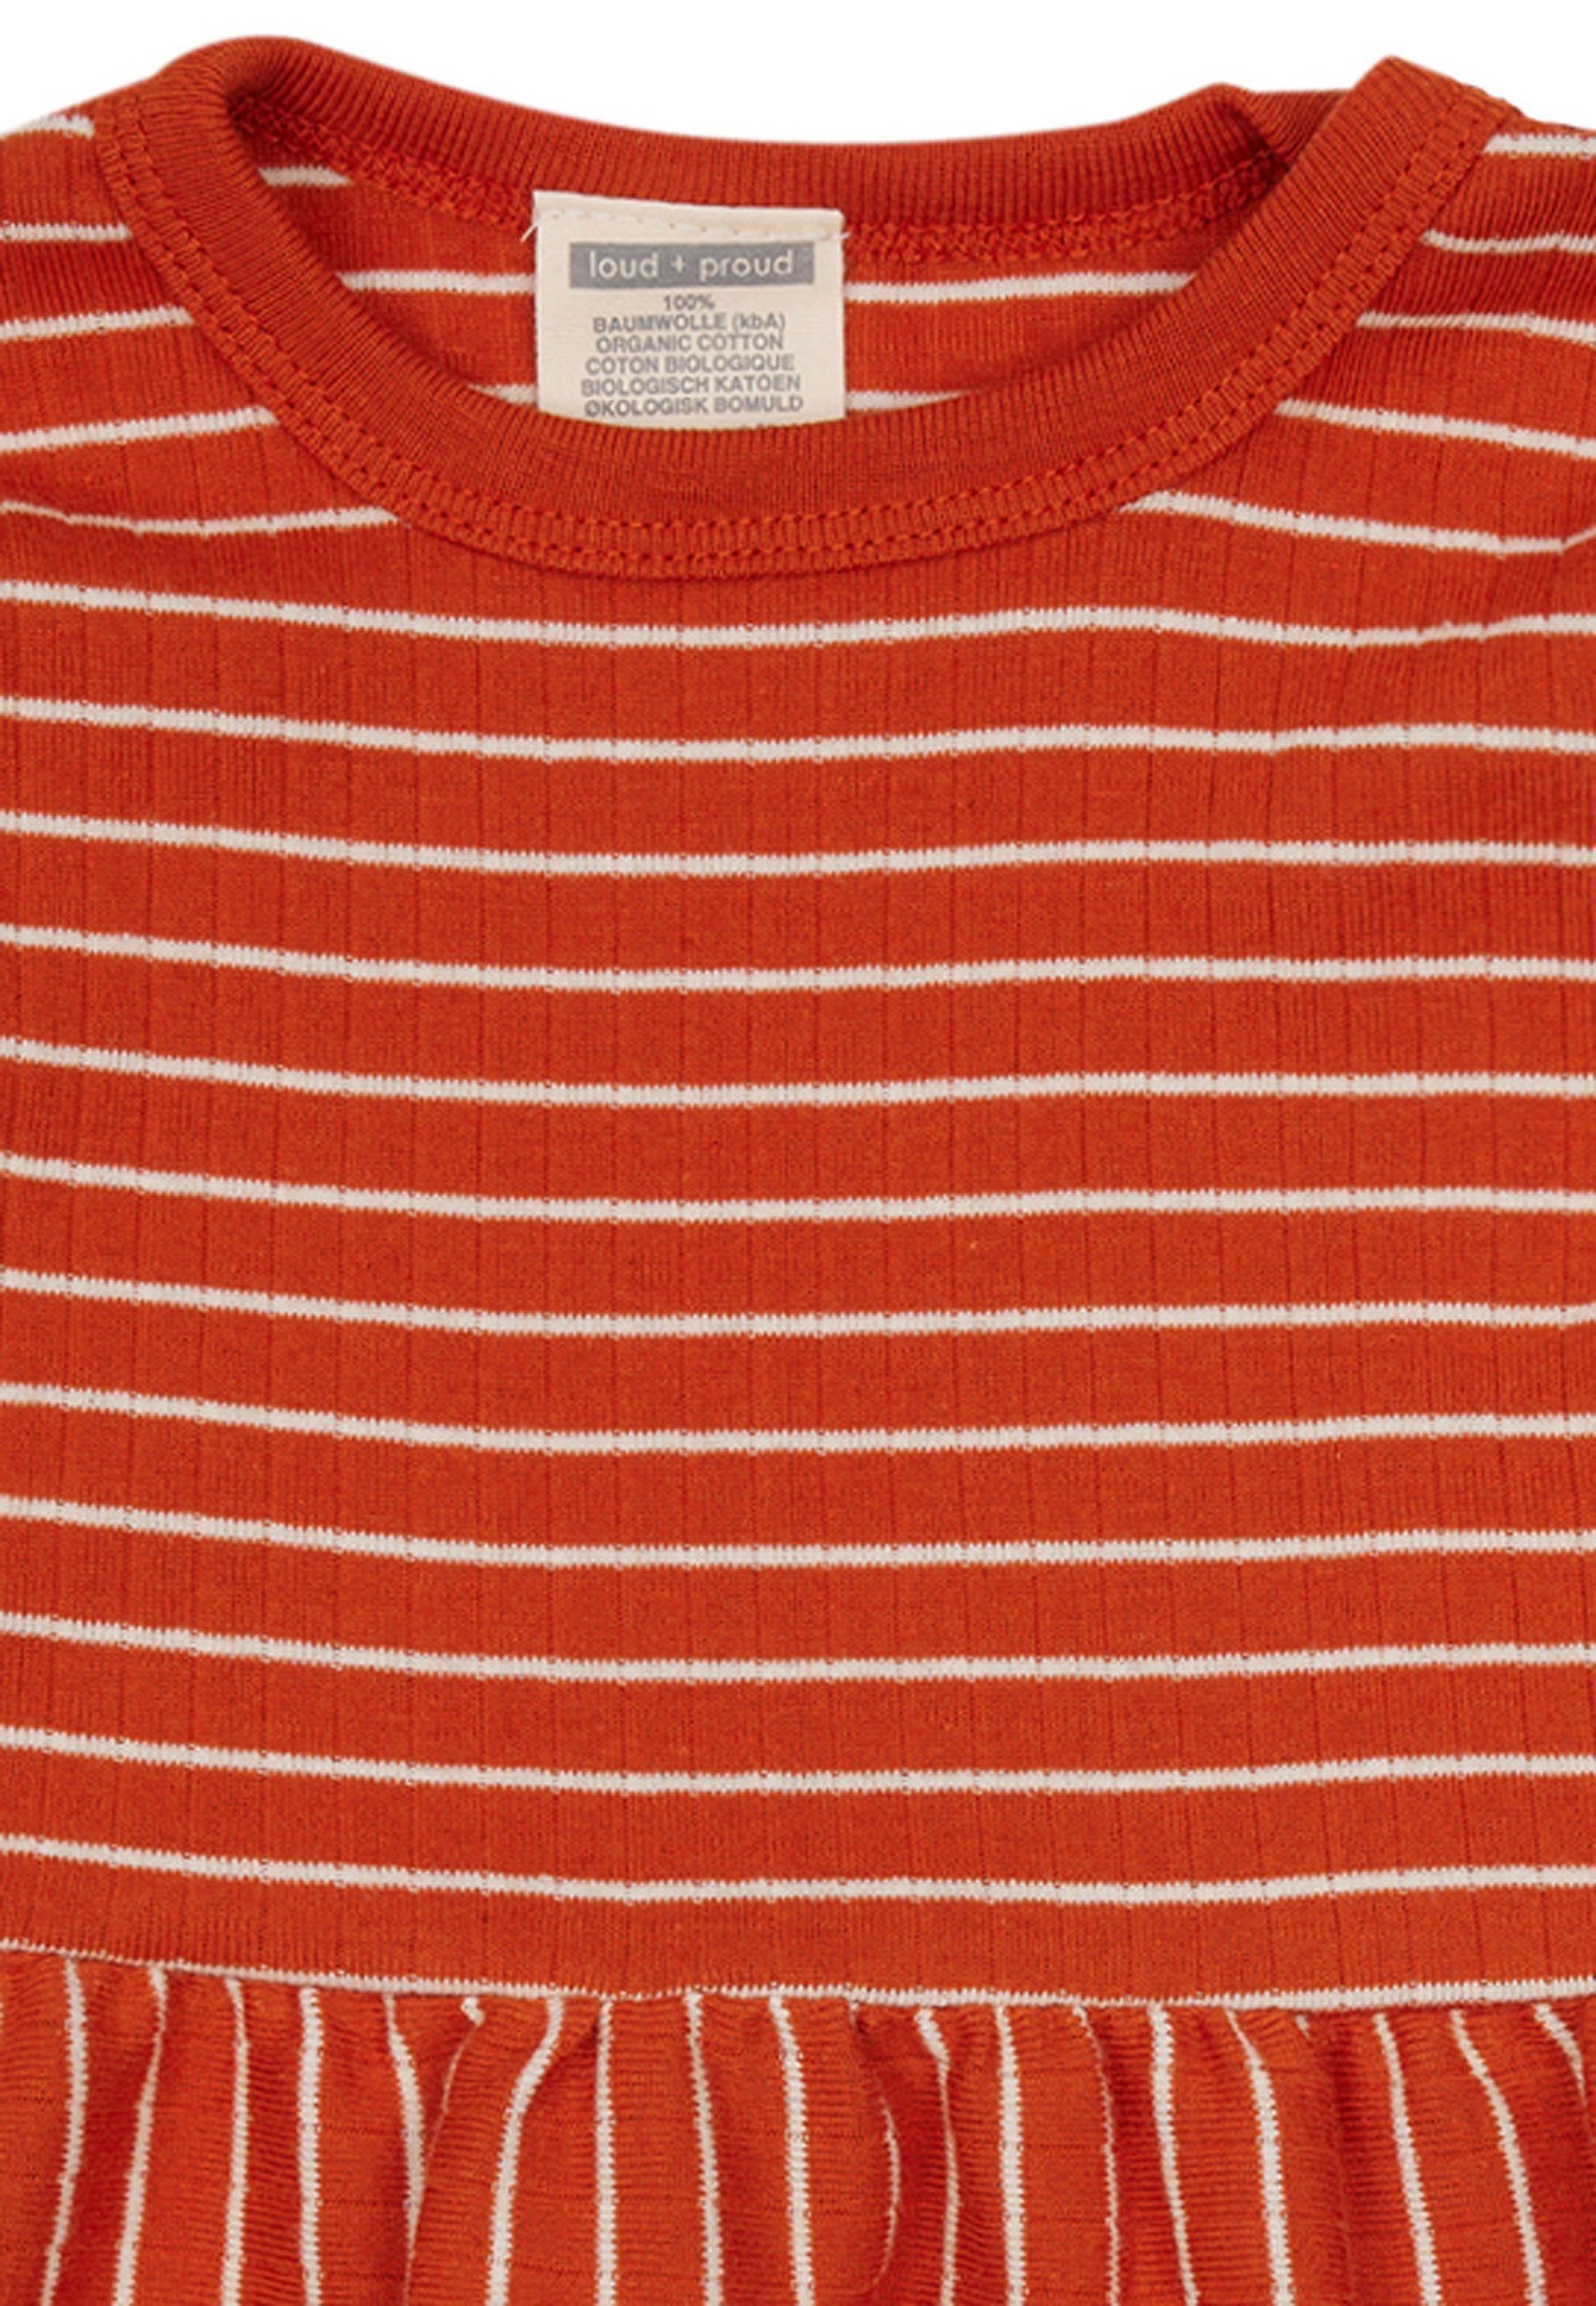 A-Linien-Kleid Ringel-Look mit zertifizierte proud loud GOTS + Bio-Baumwolle rot